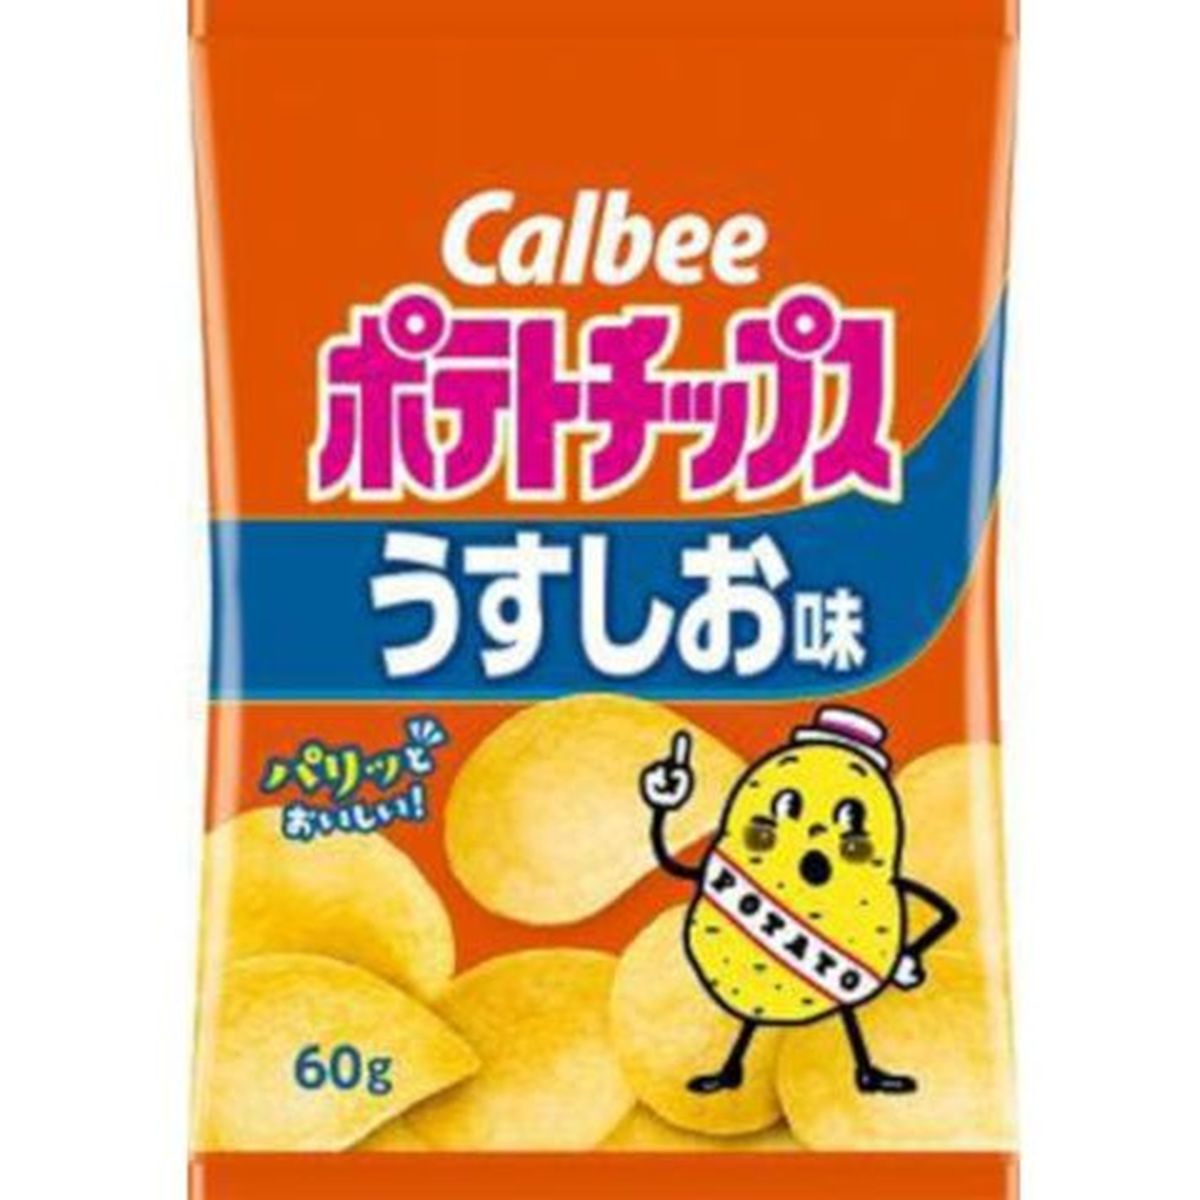 【12個入リ】カルビー ポテトチップス ウスシオ味 60g